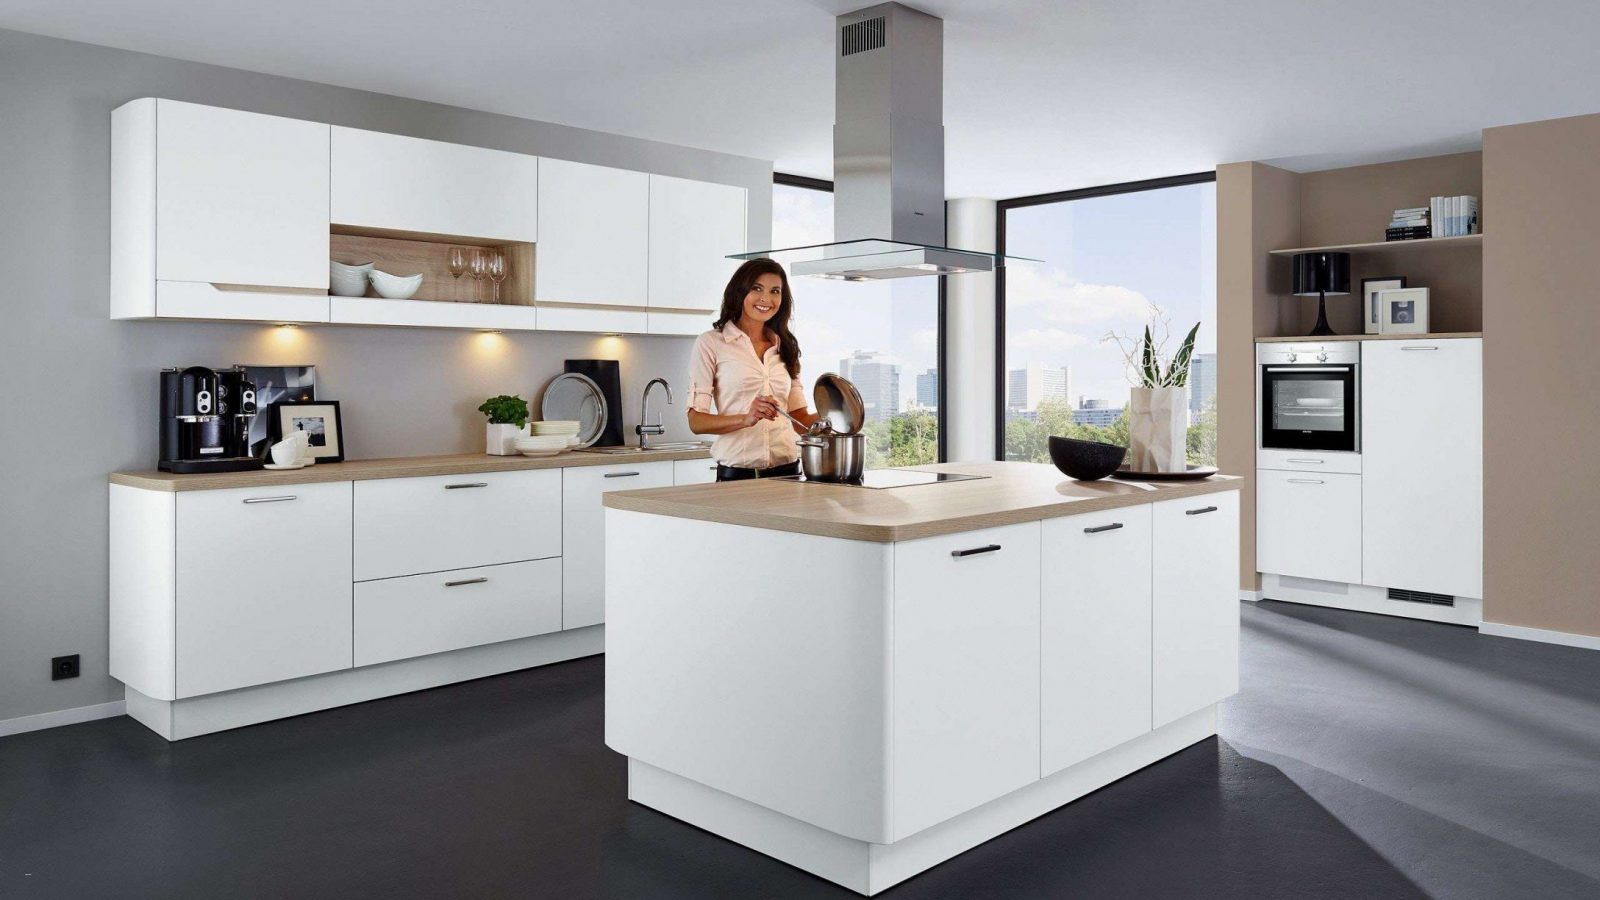 30 Das Beste Von Ikea Küchen Aktion Foto  Inspirierendes Design von Ikea Küche Mit Kochinsel Bild